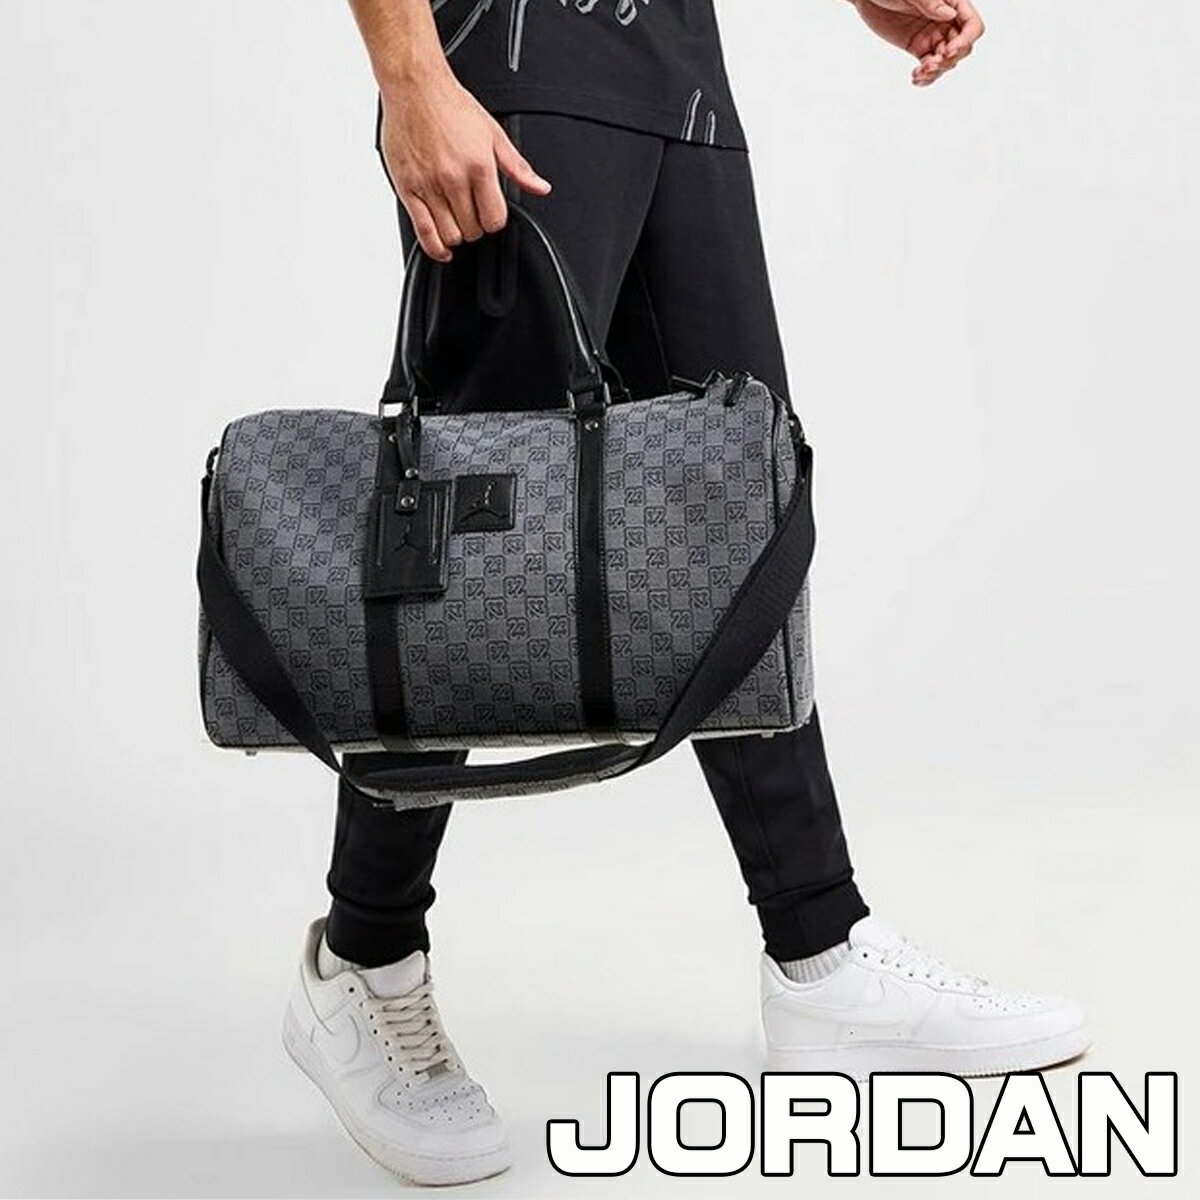 ジョーダン ダッフルバック モノグラム Jordan Monogram Duffle Bag 大人気 アクセサリー メンズ ユニセックス ナイキ Jordan 正規品 鞄 ユ00572